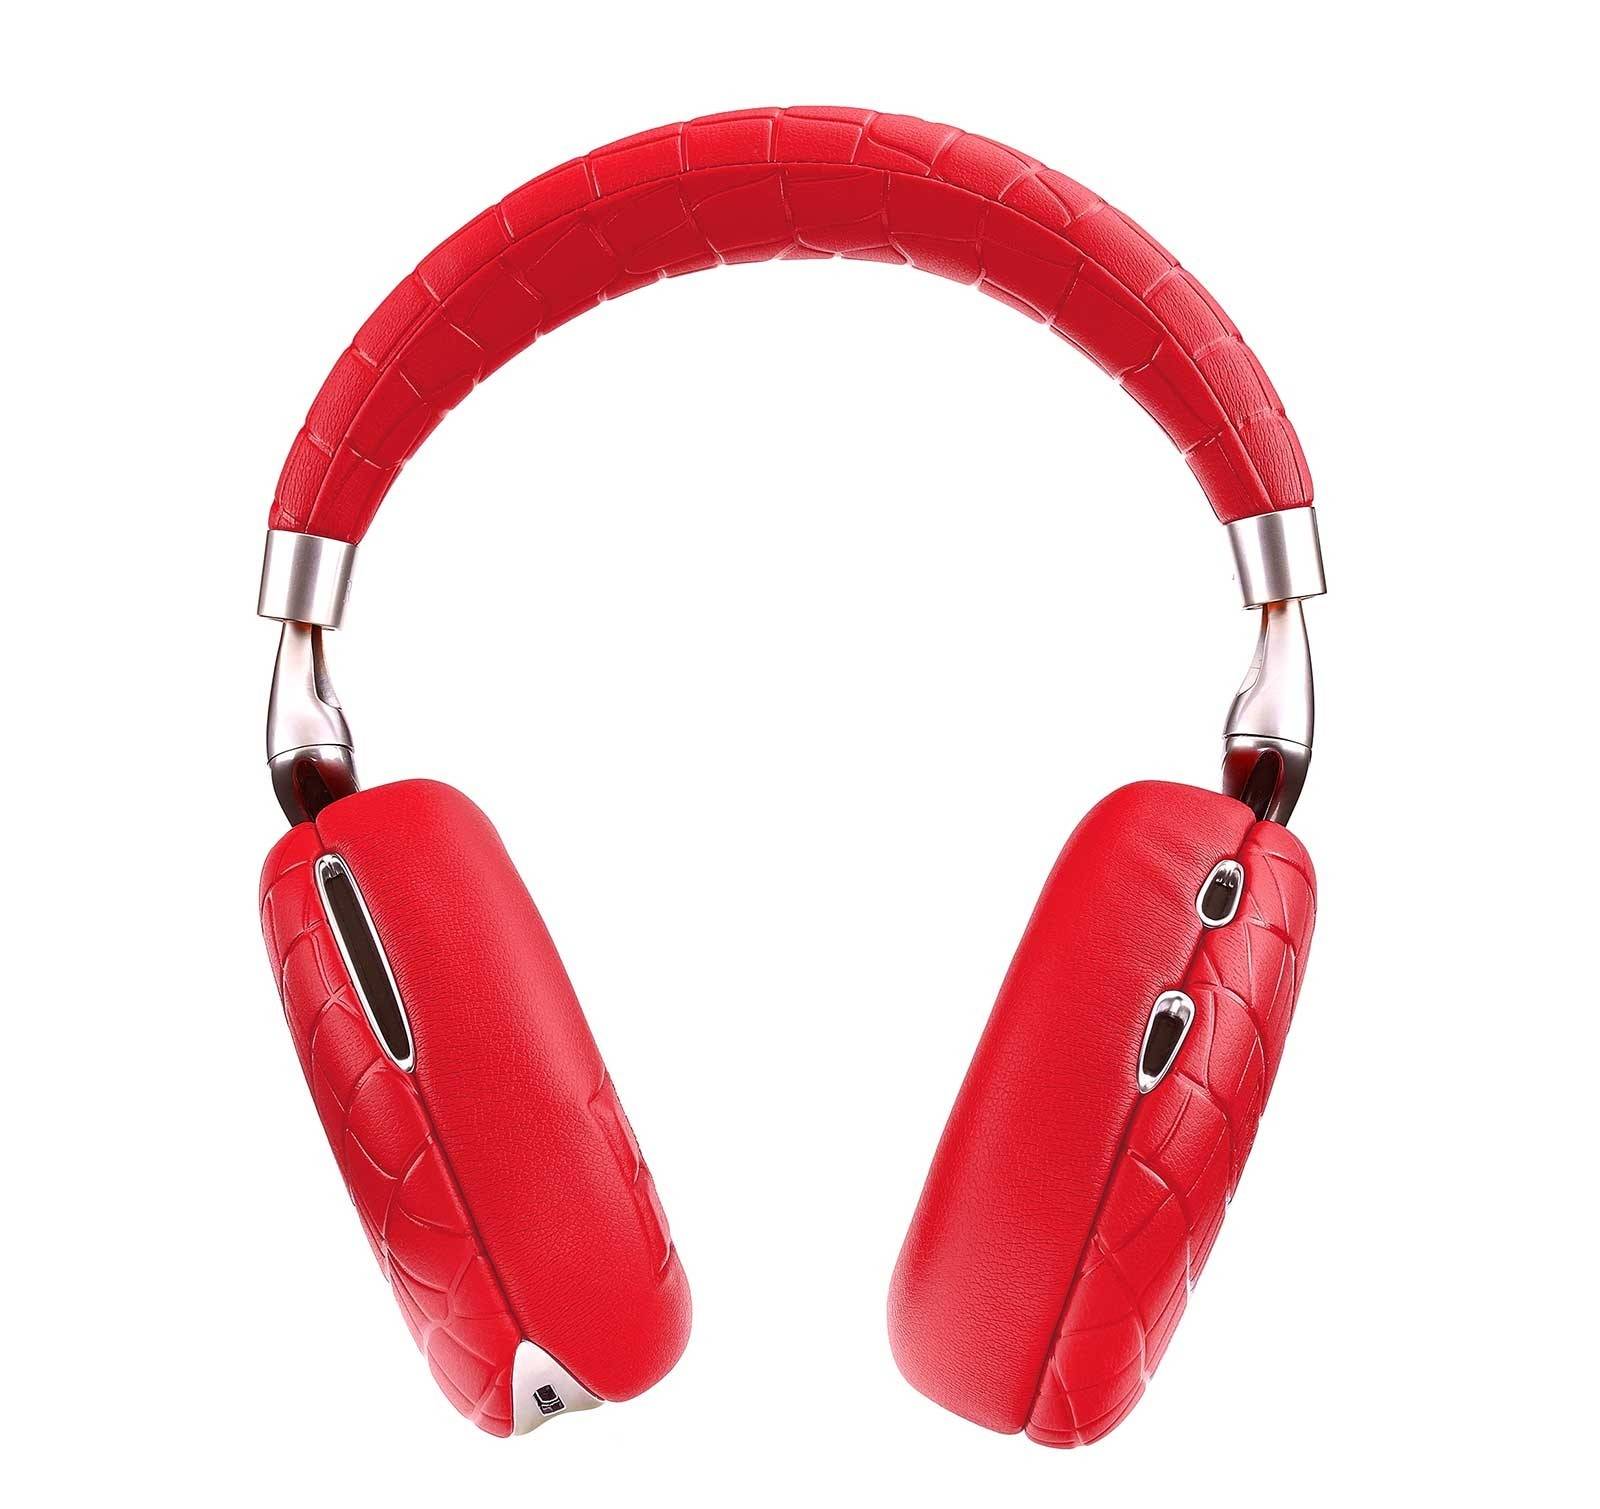 parrot-zik-3-red-croc-wireless-bluetooth-headphones-210